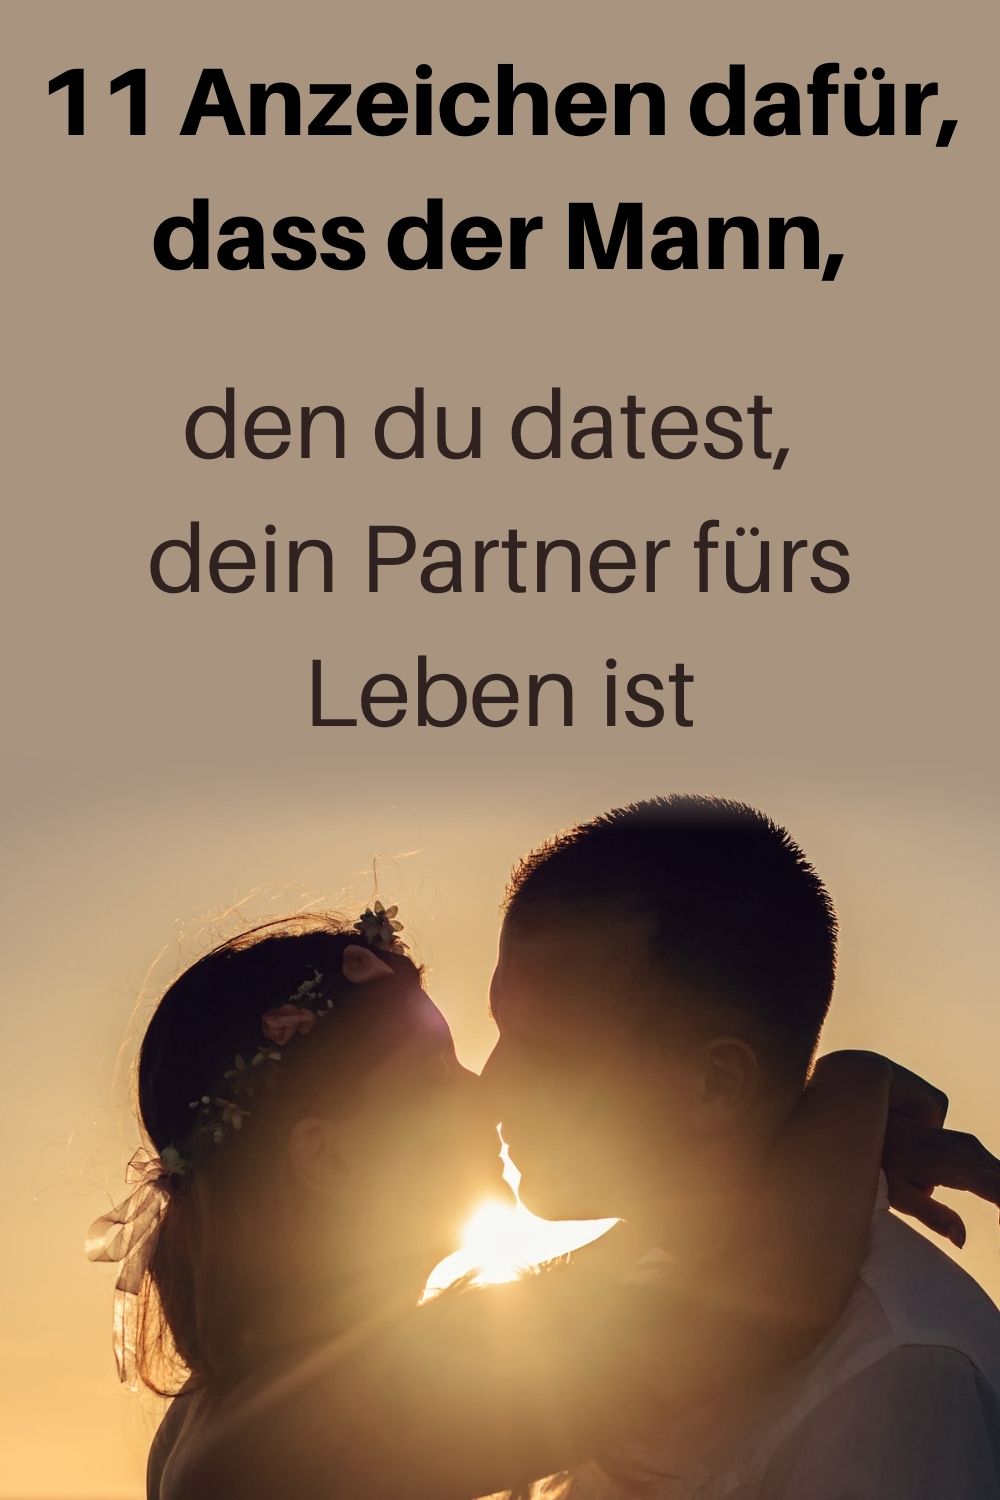 ich suche einen partner fürs leben singles berlin marzahn